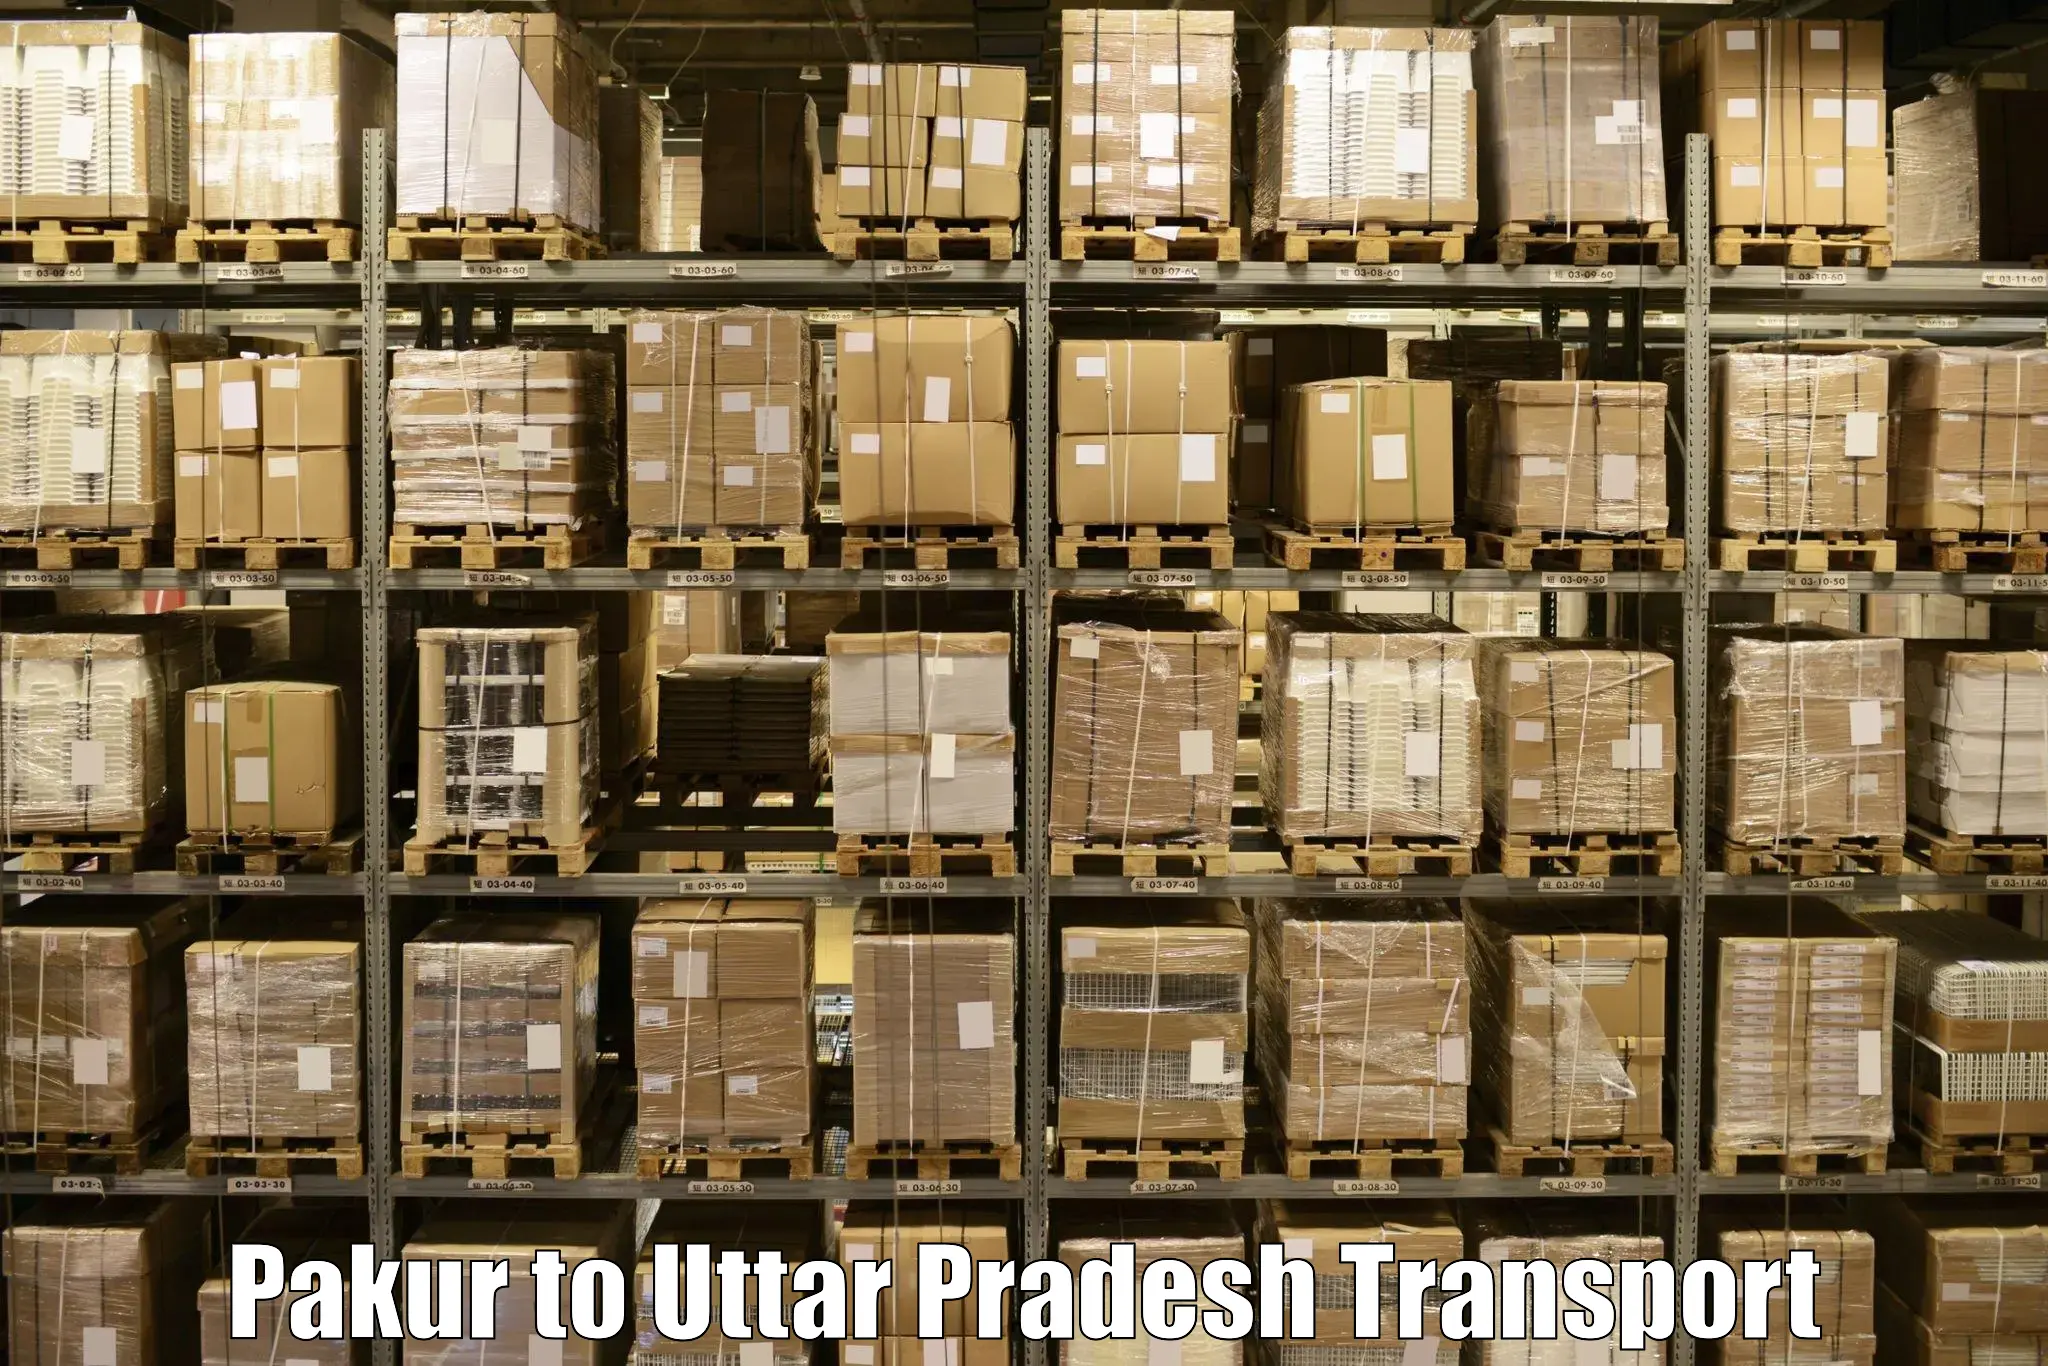 Furniture transport service Pakur to Siyana